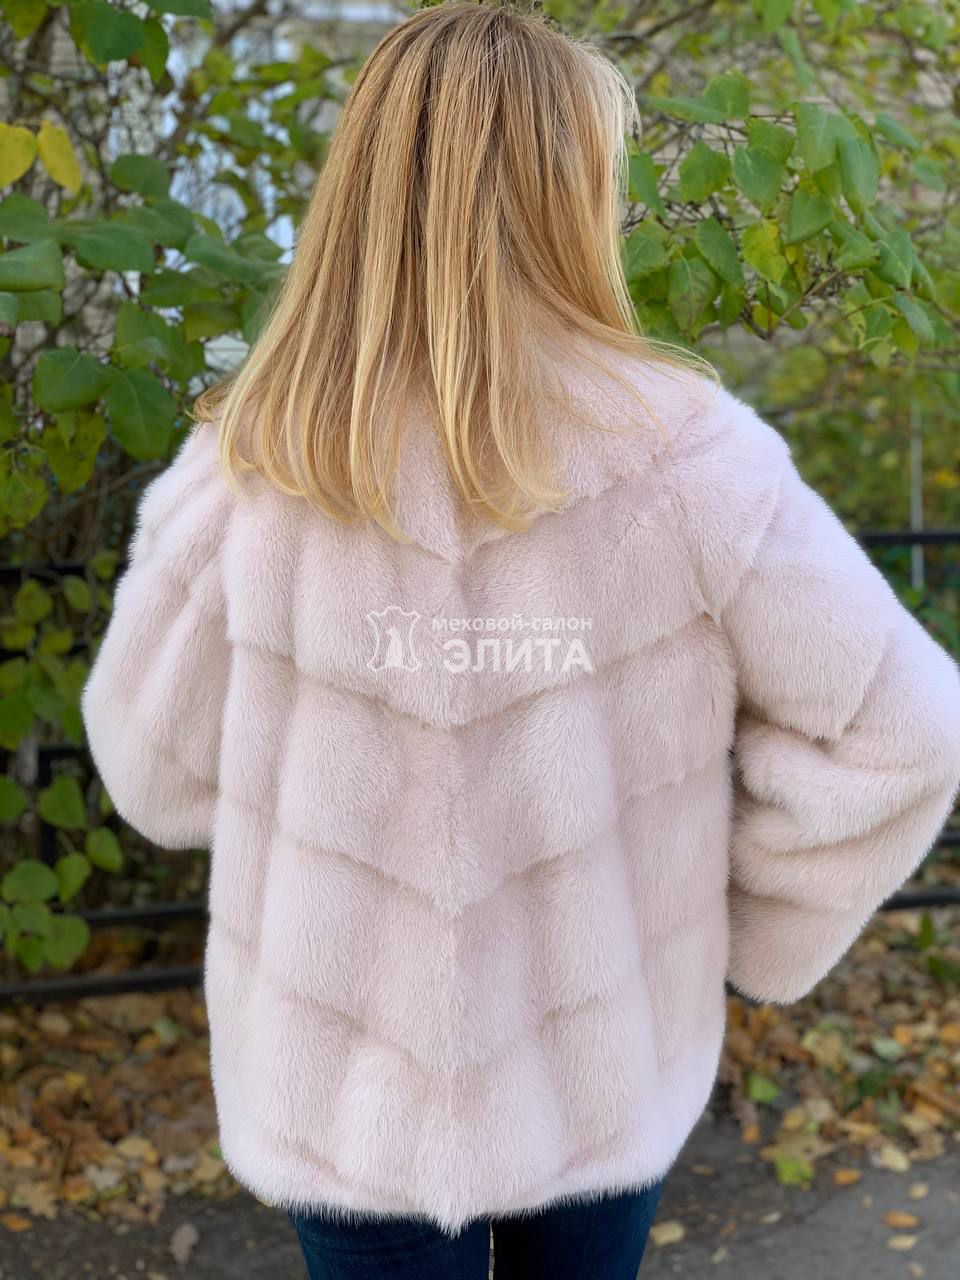 Куртка из норки S-12021, р-р 46-50, цена 114600 рублей в интернет-магазине кожи и меха ЭЛИТА. Вид 2